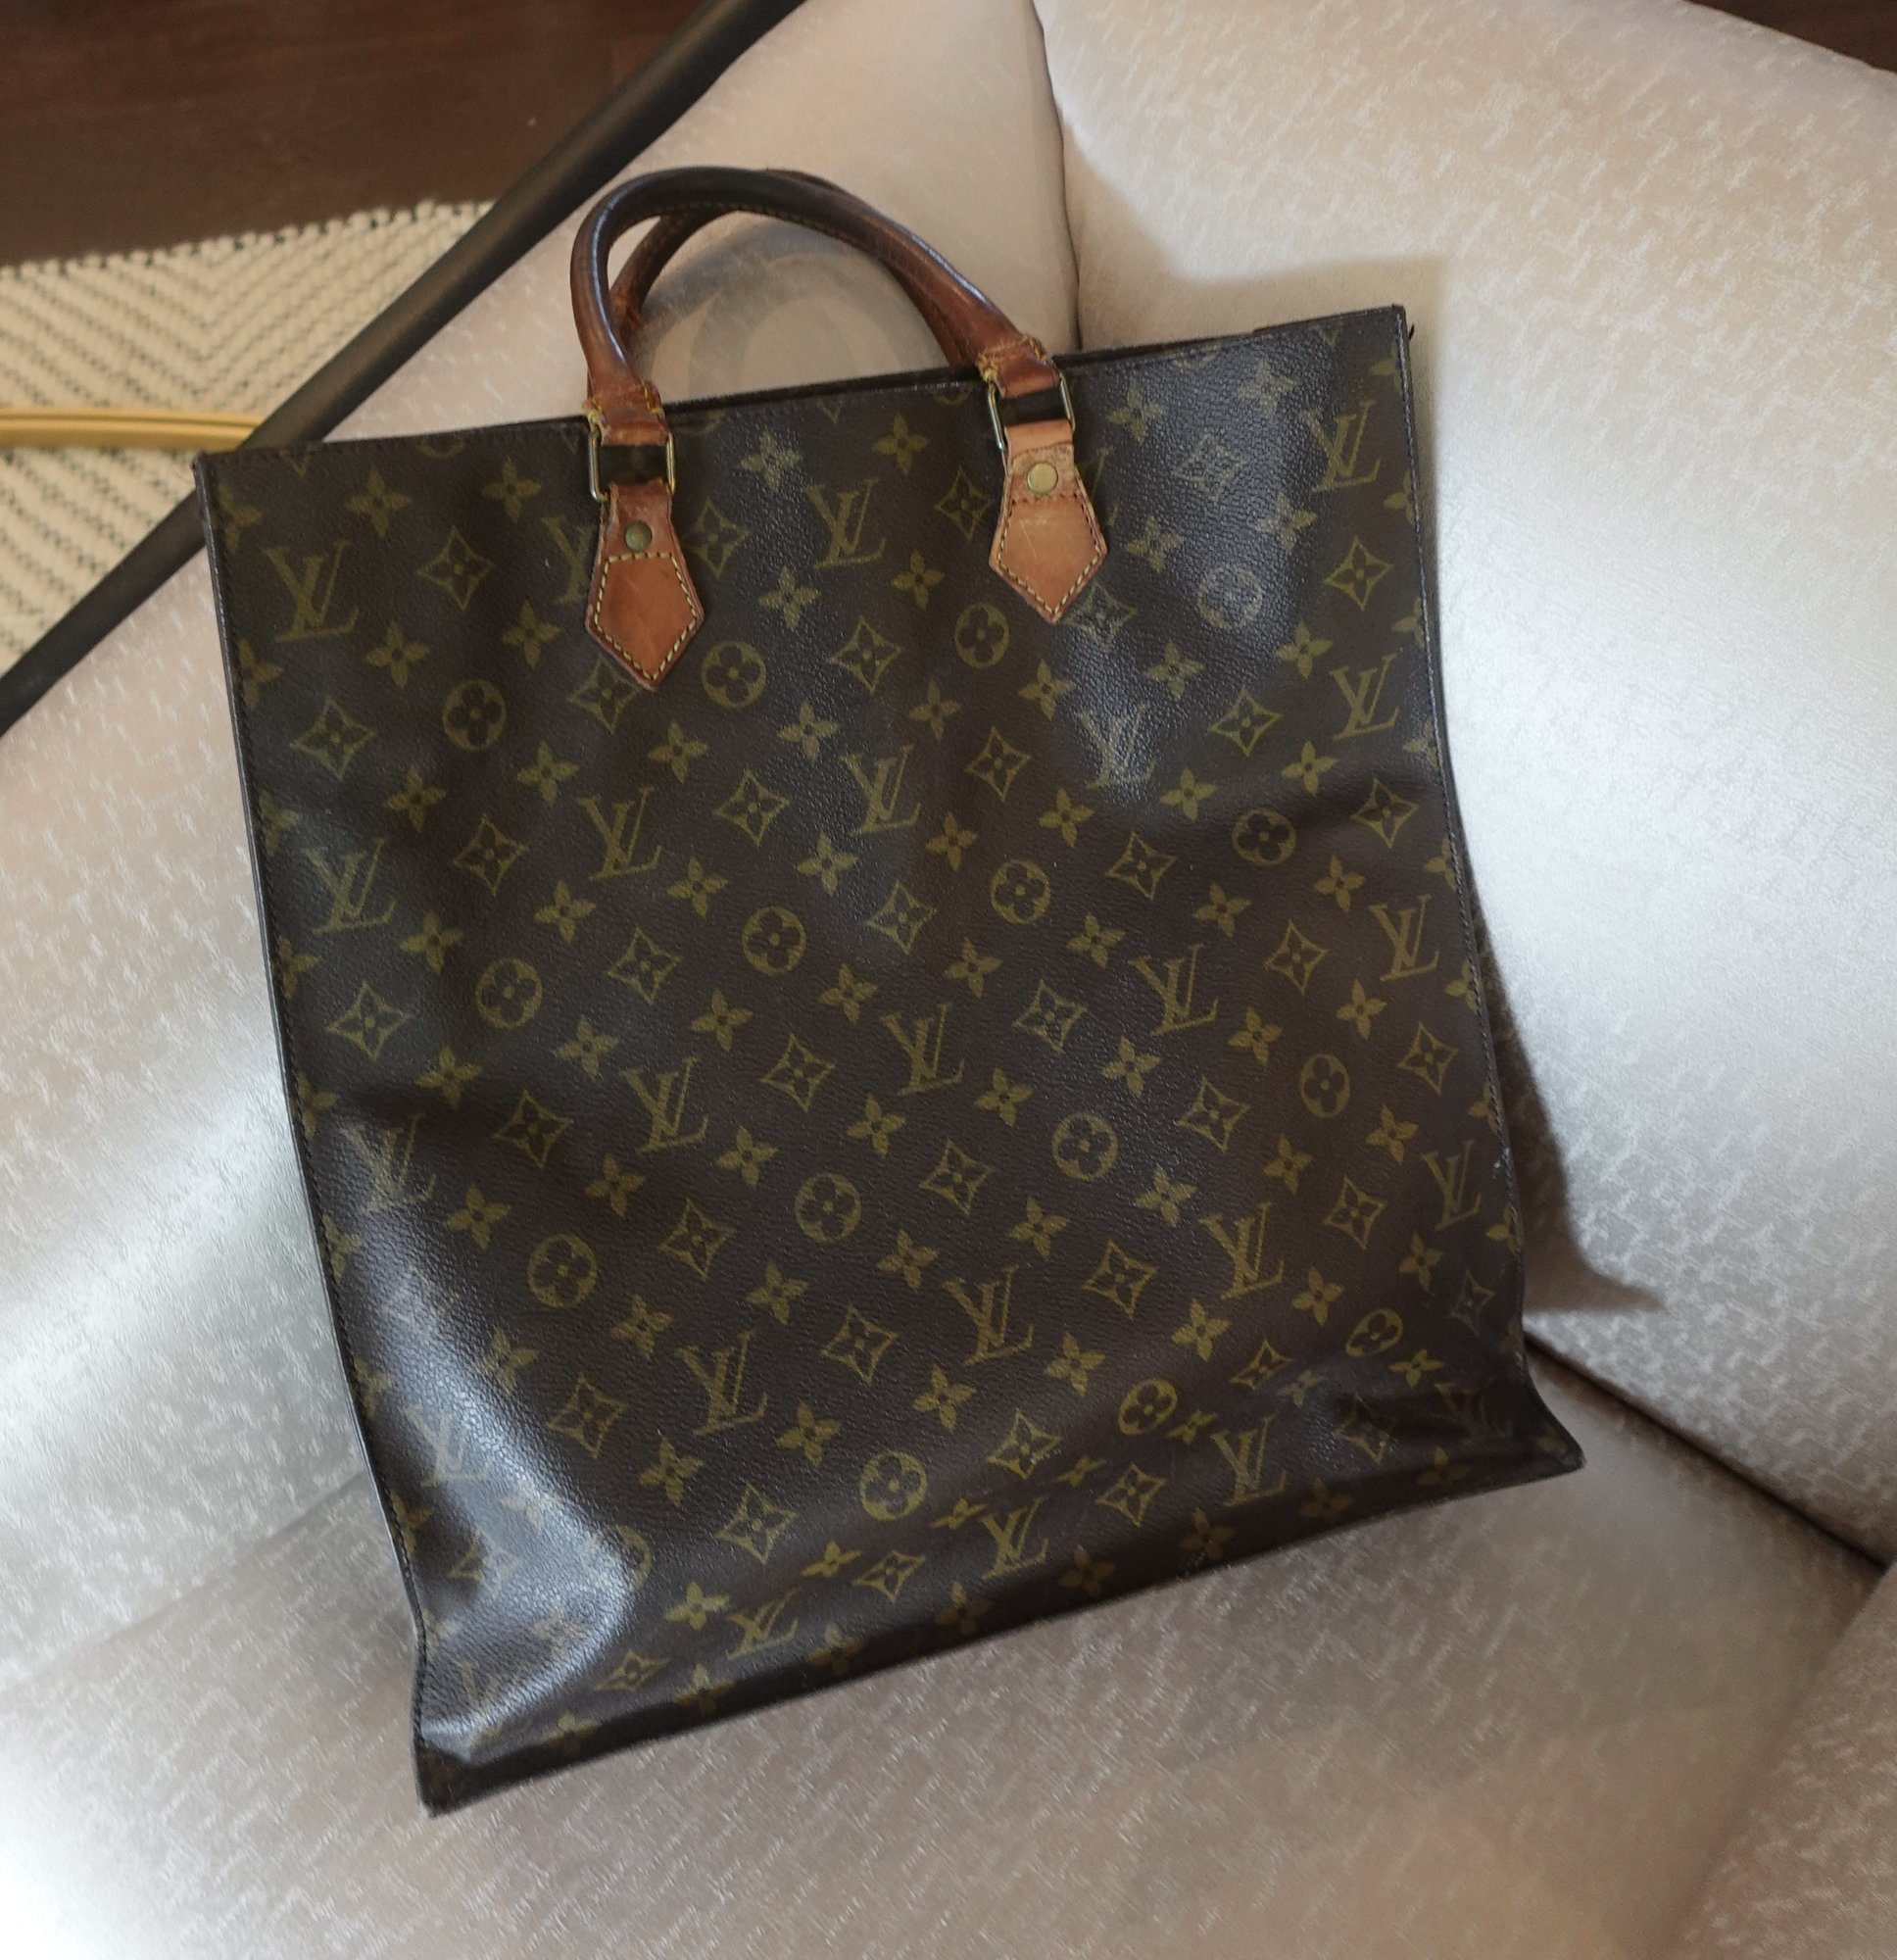 Sold at Auction: Vintage Louis Vuitton Tote Bag